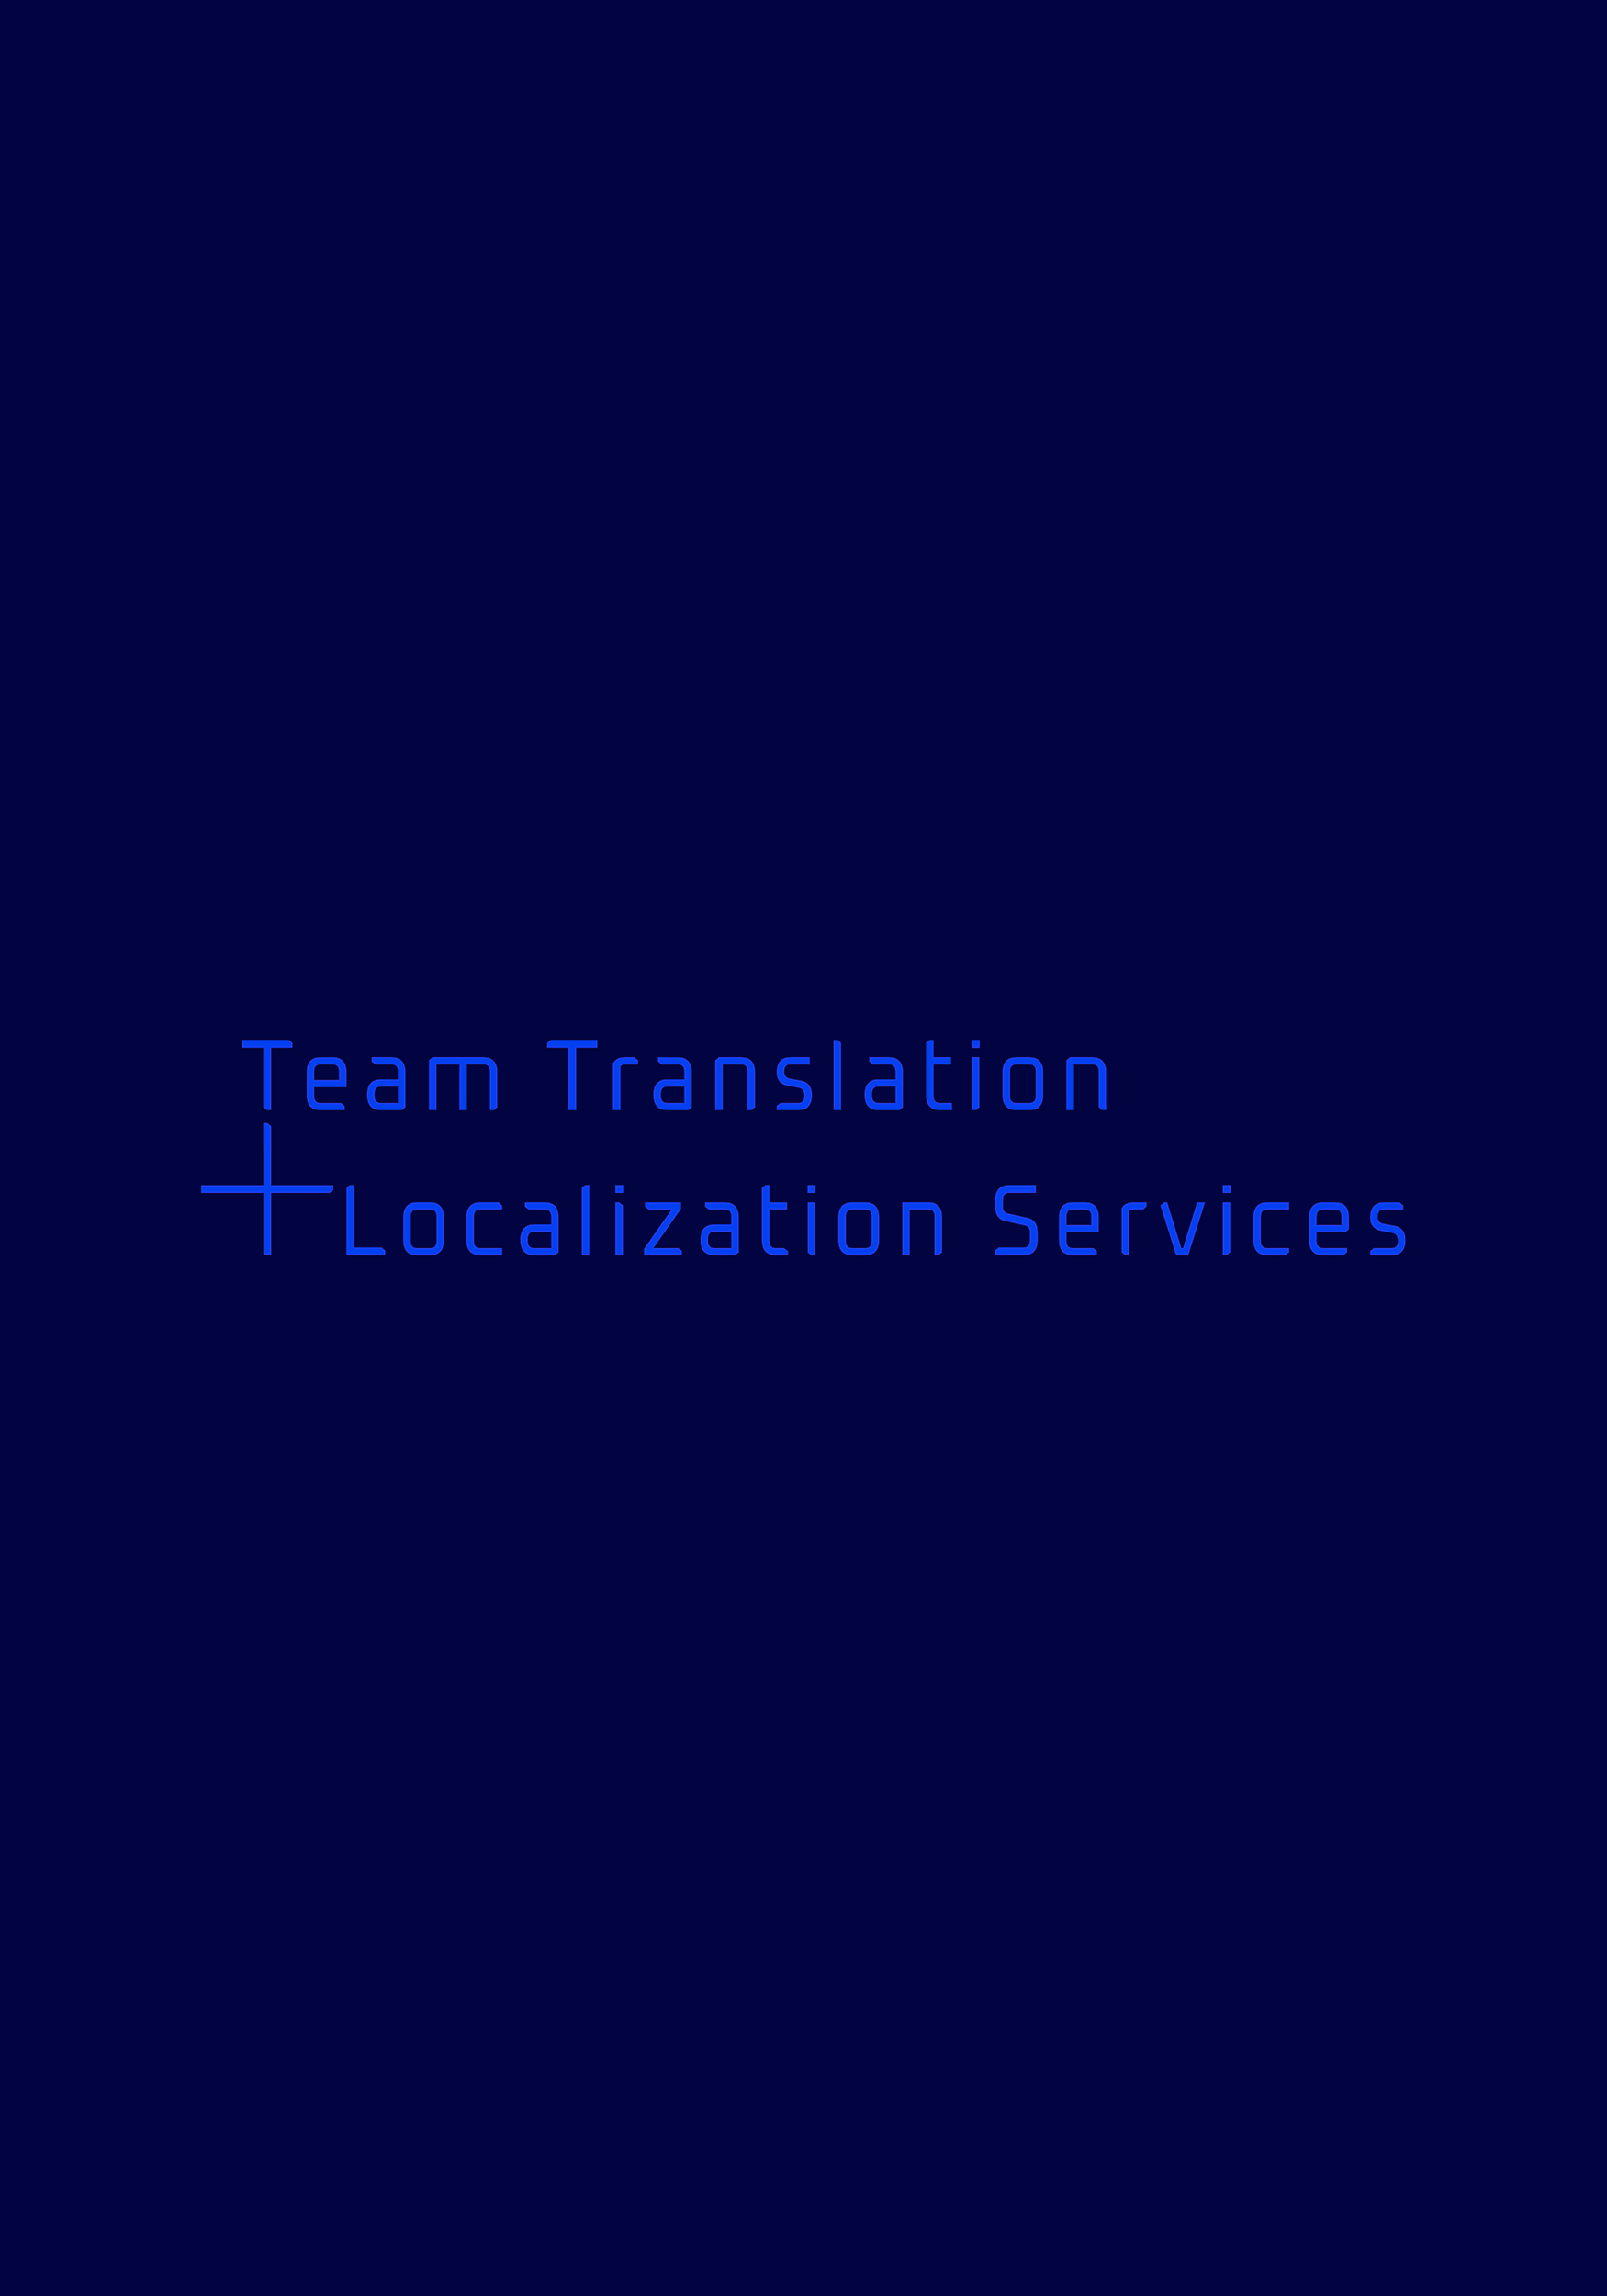 Das Logo von Team Translation + Localization Services, das durch Corporate Branding entstand